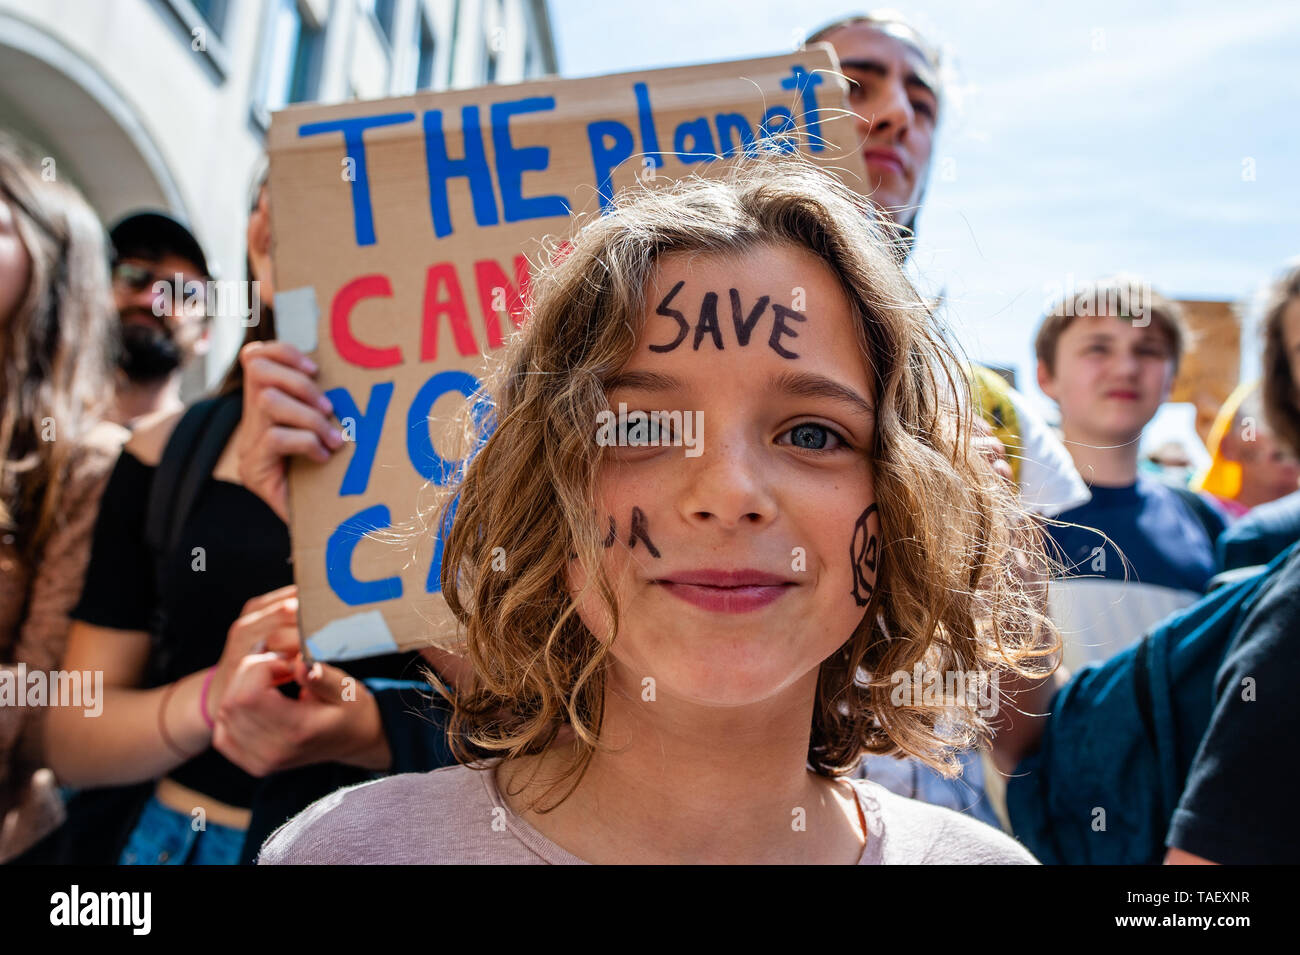 Ein kleines Mädchen mit ihrem Gesicht sagen, 'Save unser Planet", während des Protestes. Zehntausende Kinder in mehr als 60 Ländern gestreikt Klimawandel Aktion zu verlangen. # FridaysForFuture ist eine Bewegung, die im August 2018 begann, nach 15 Jahren alten Greta Thunberg vor dem schwedischen Parlament jede Schule Tag saß für drei Wochen, gegen die fehlende Aktion auf die Klimakrise zu protestieren. In Brüssel, nicht nur Studenten, sondern Lehrer, Wissenschaftler, und mehrere Syndikate nahm die Straßen der belgischen Hauptstadt zum zweiten Mal für eine bessere Klimapolitik zu protestieren. Nach Stockfoto